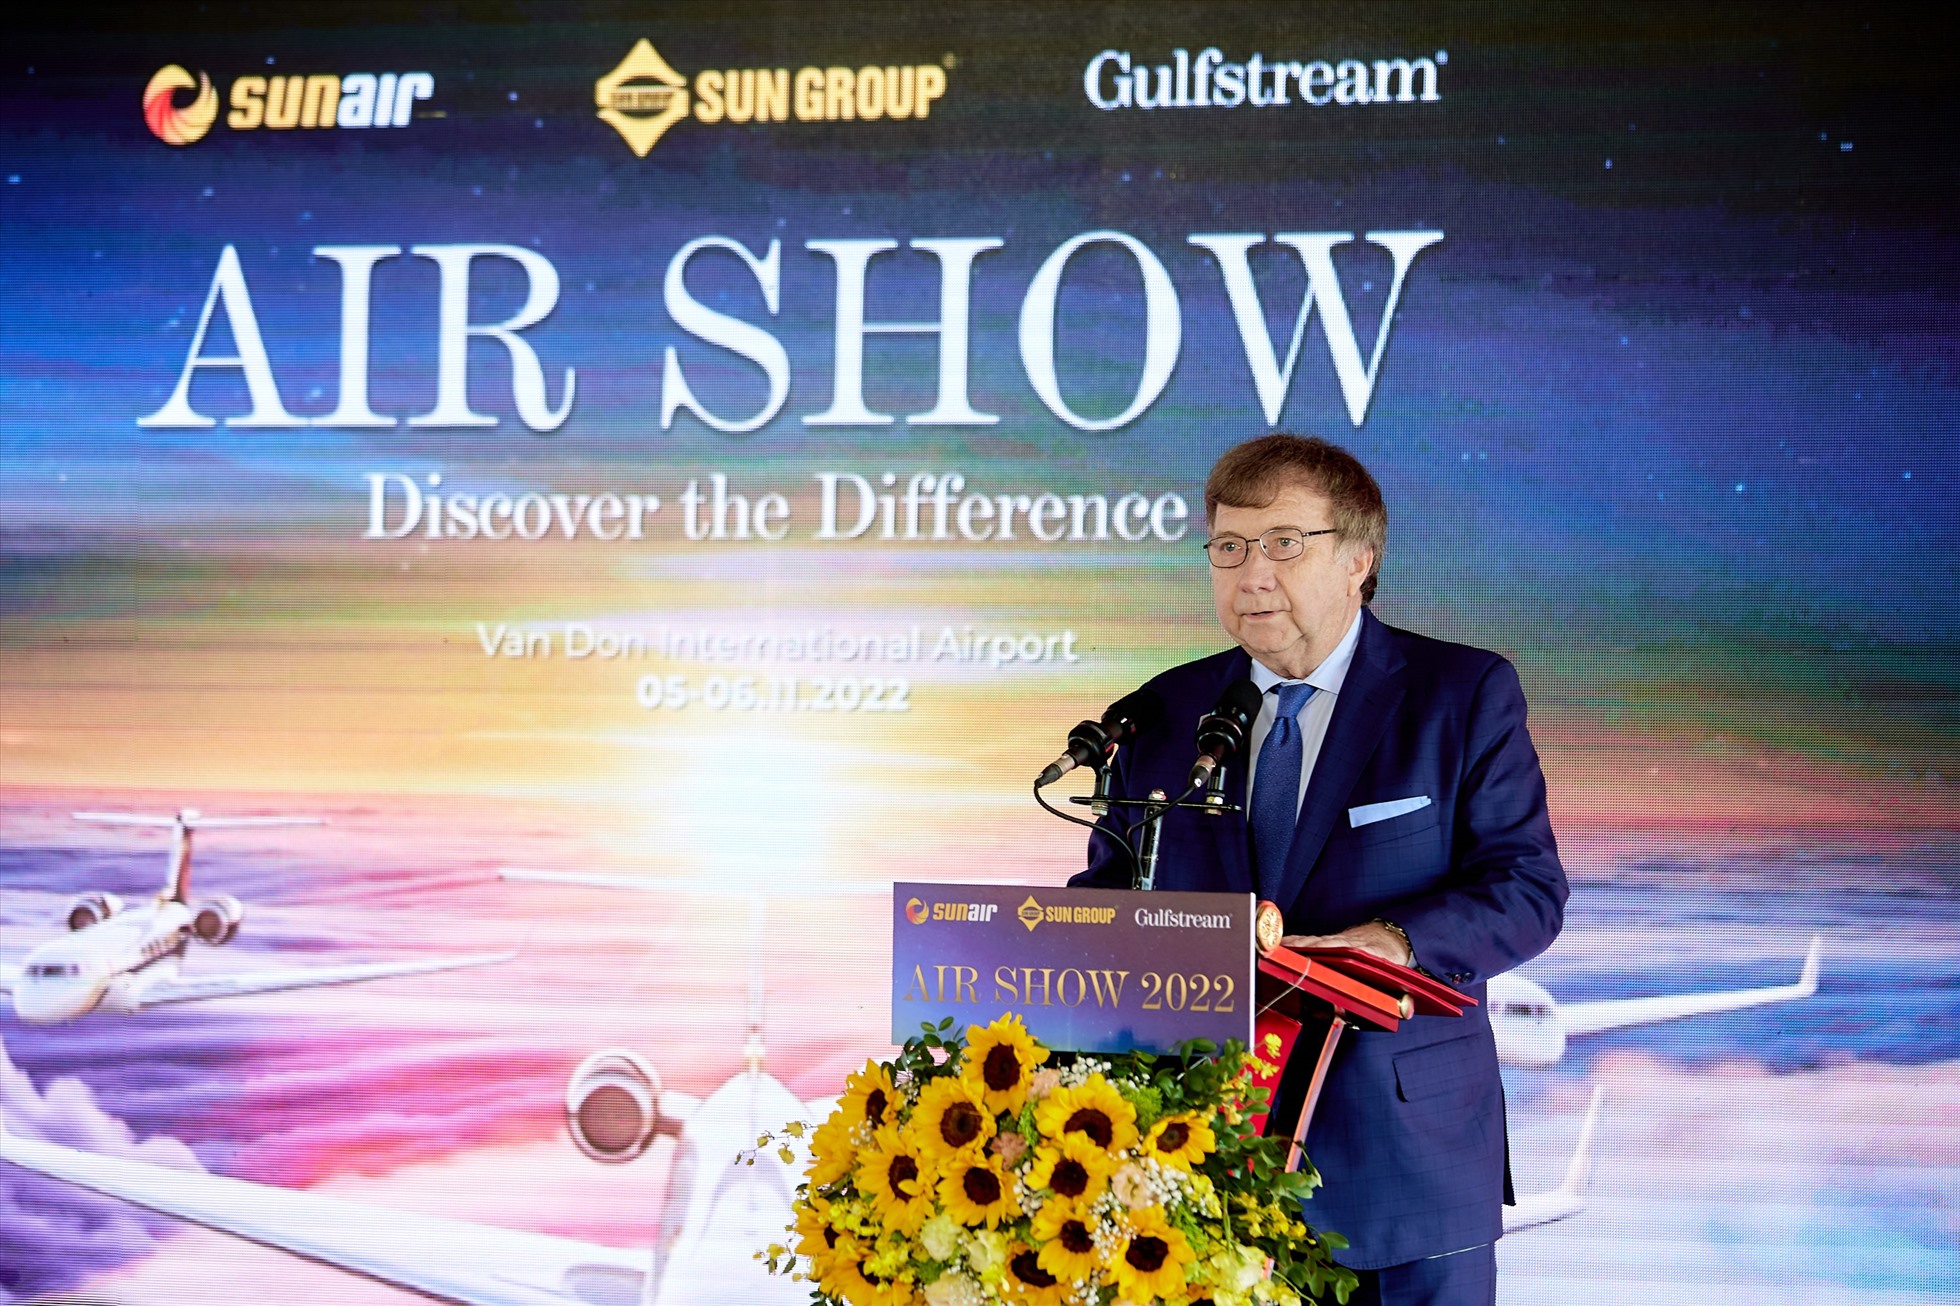 Phát biểu tại sự kiện, ông Wayne Oedewalt - Phó Chủ tịch Gulfstream khu vực Châu Á Thái Bình Dương cho biết, Việt Nam đang vươn lên mạnh mẽ và cho thấy tiềm năng phát triển không ngừng đối với ngành hàng không thương gia, cũng như hàng không nói chung.